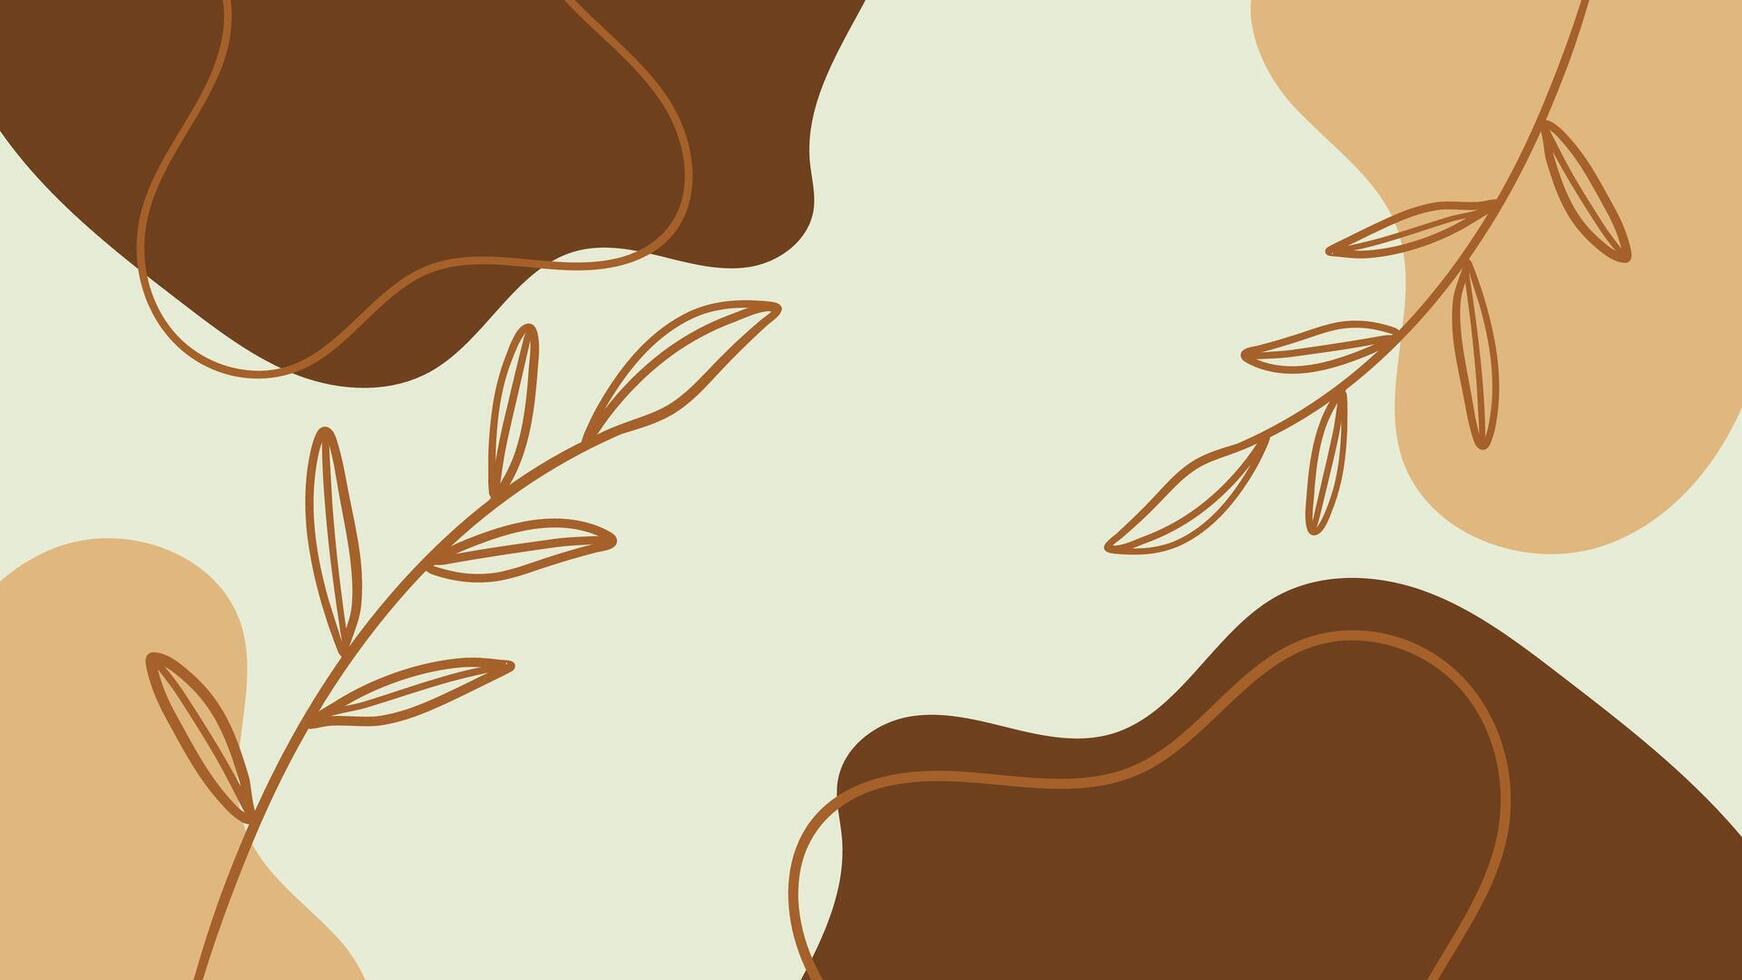 abstrakt bakgrund med hand dragen organisk former och löv. vektor illustration.